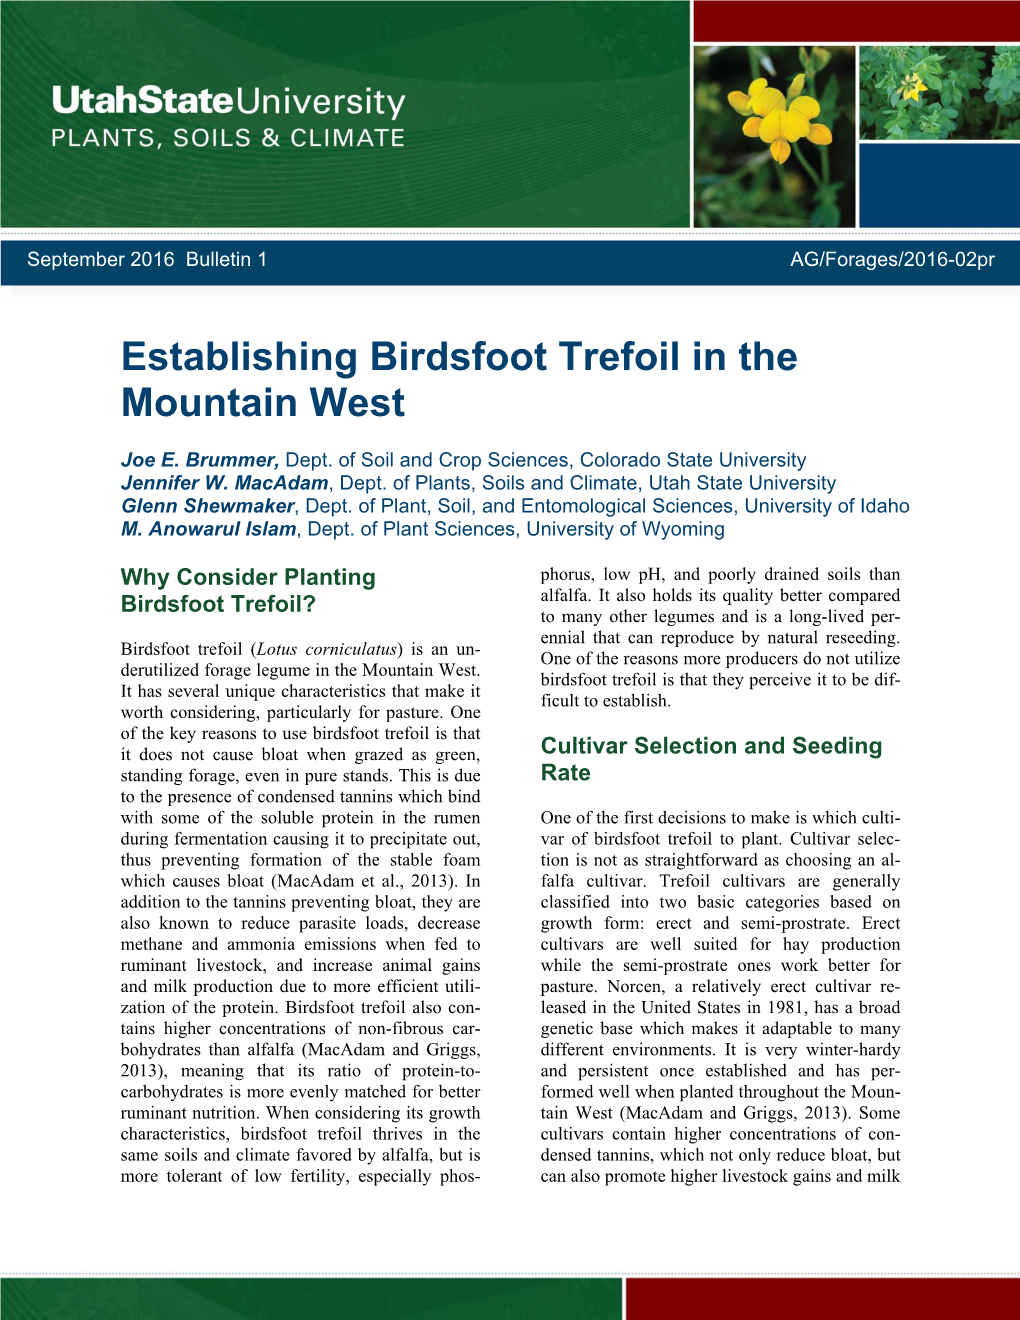 Establishing Birdsfoot Trefoil in the Mountain West